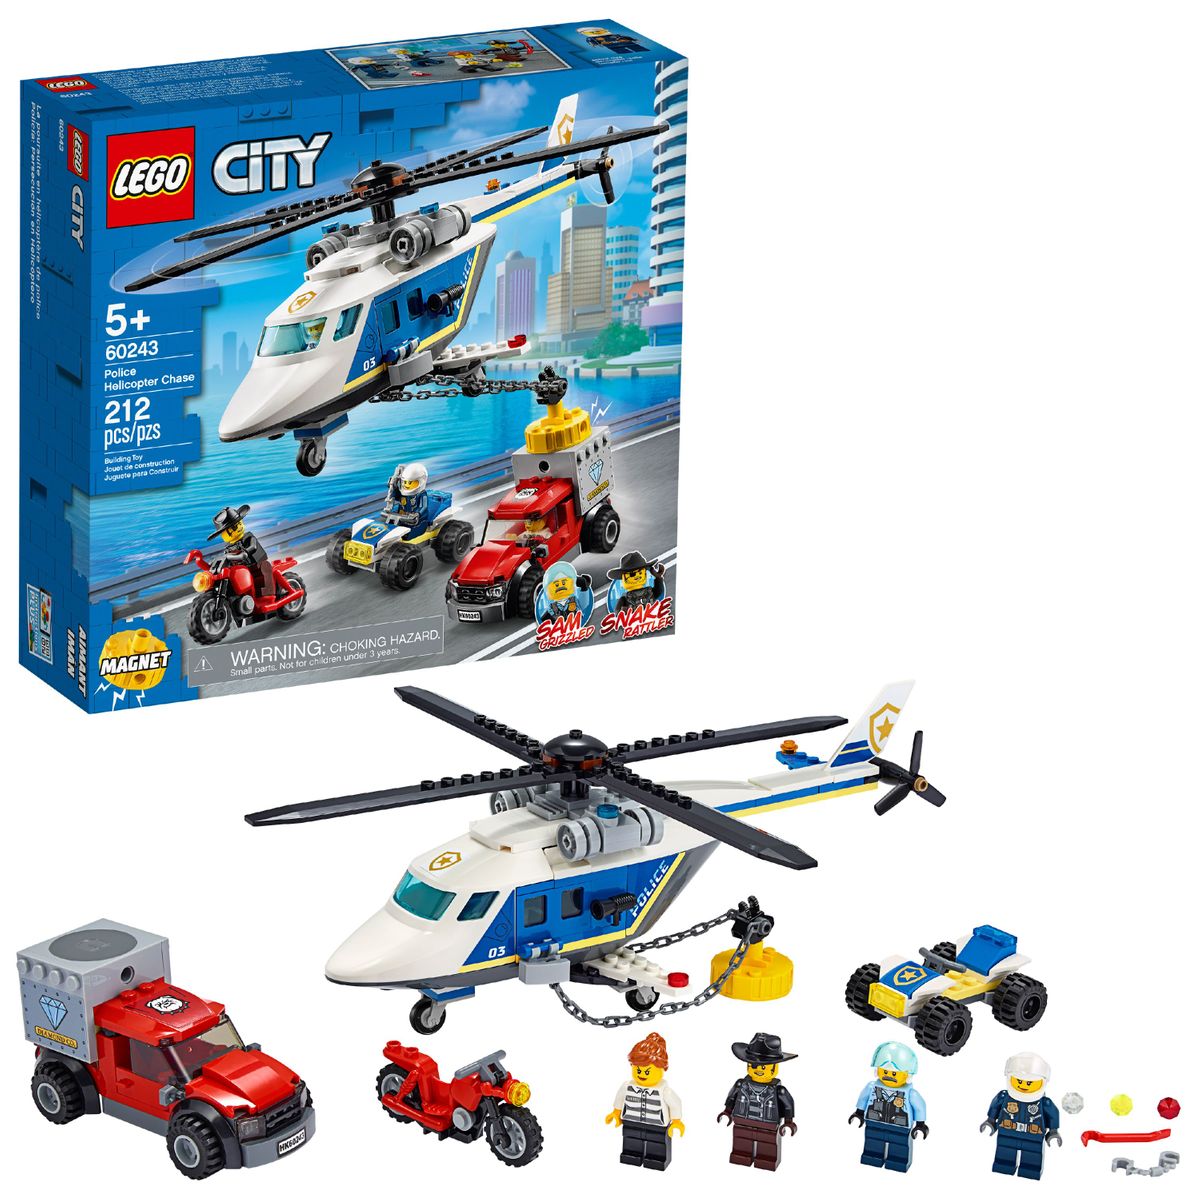 送料無料 212 ピース Lego City レゴ シティー ポリス ヘリコプター 警察 ヘリ 乗り物 ビルディング キット おもちゃ 幼児 玩具 知育玩具 組み立て オモチャ ブロック 海外直送